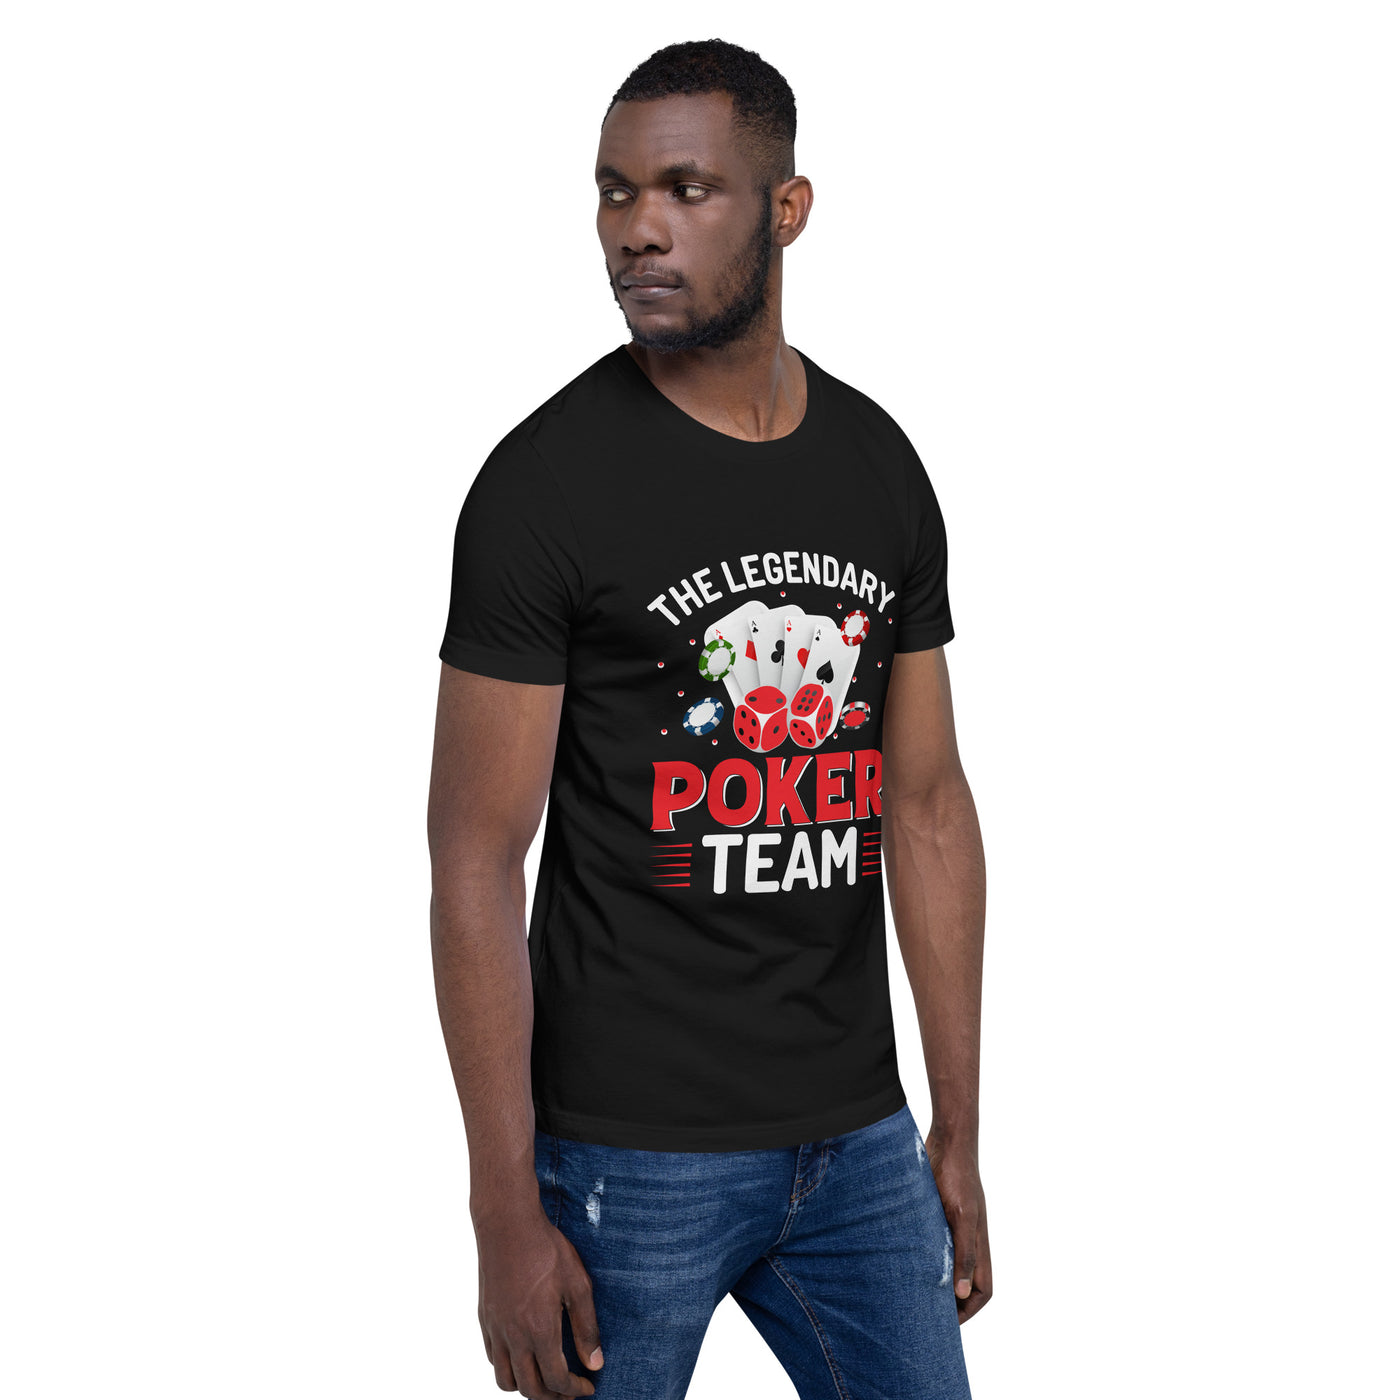 The Legendary Poker Team - Unisex t-shirt